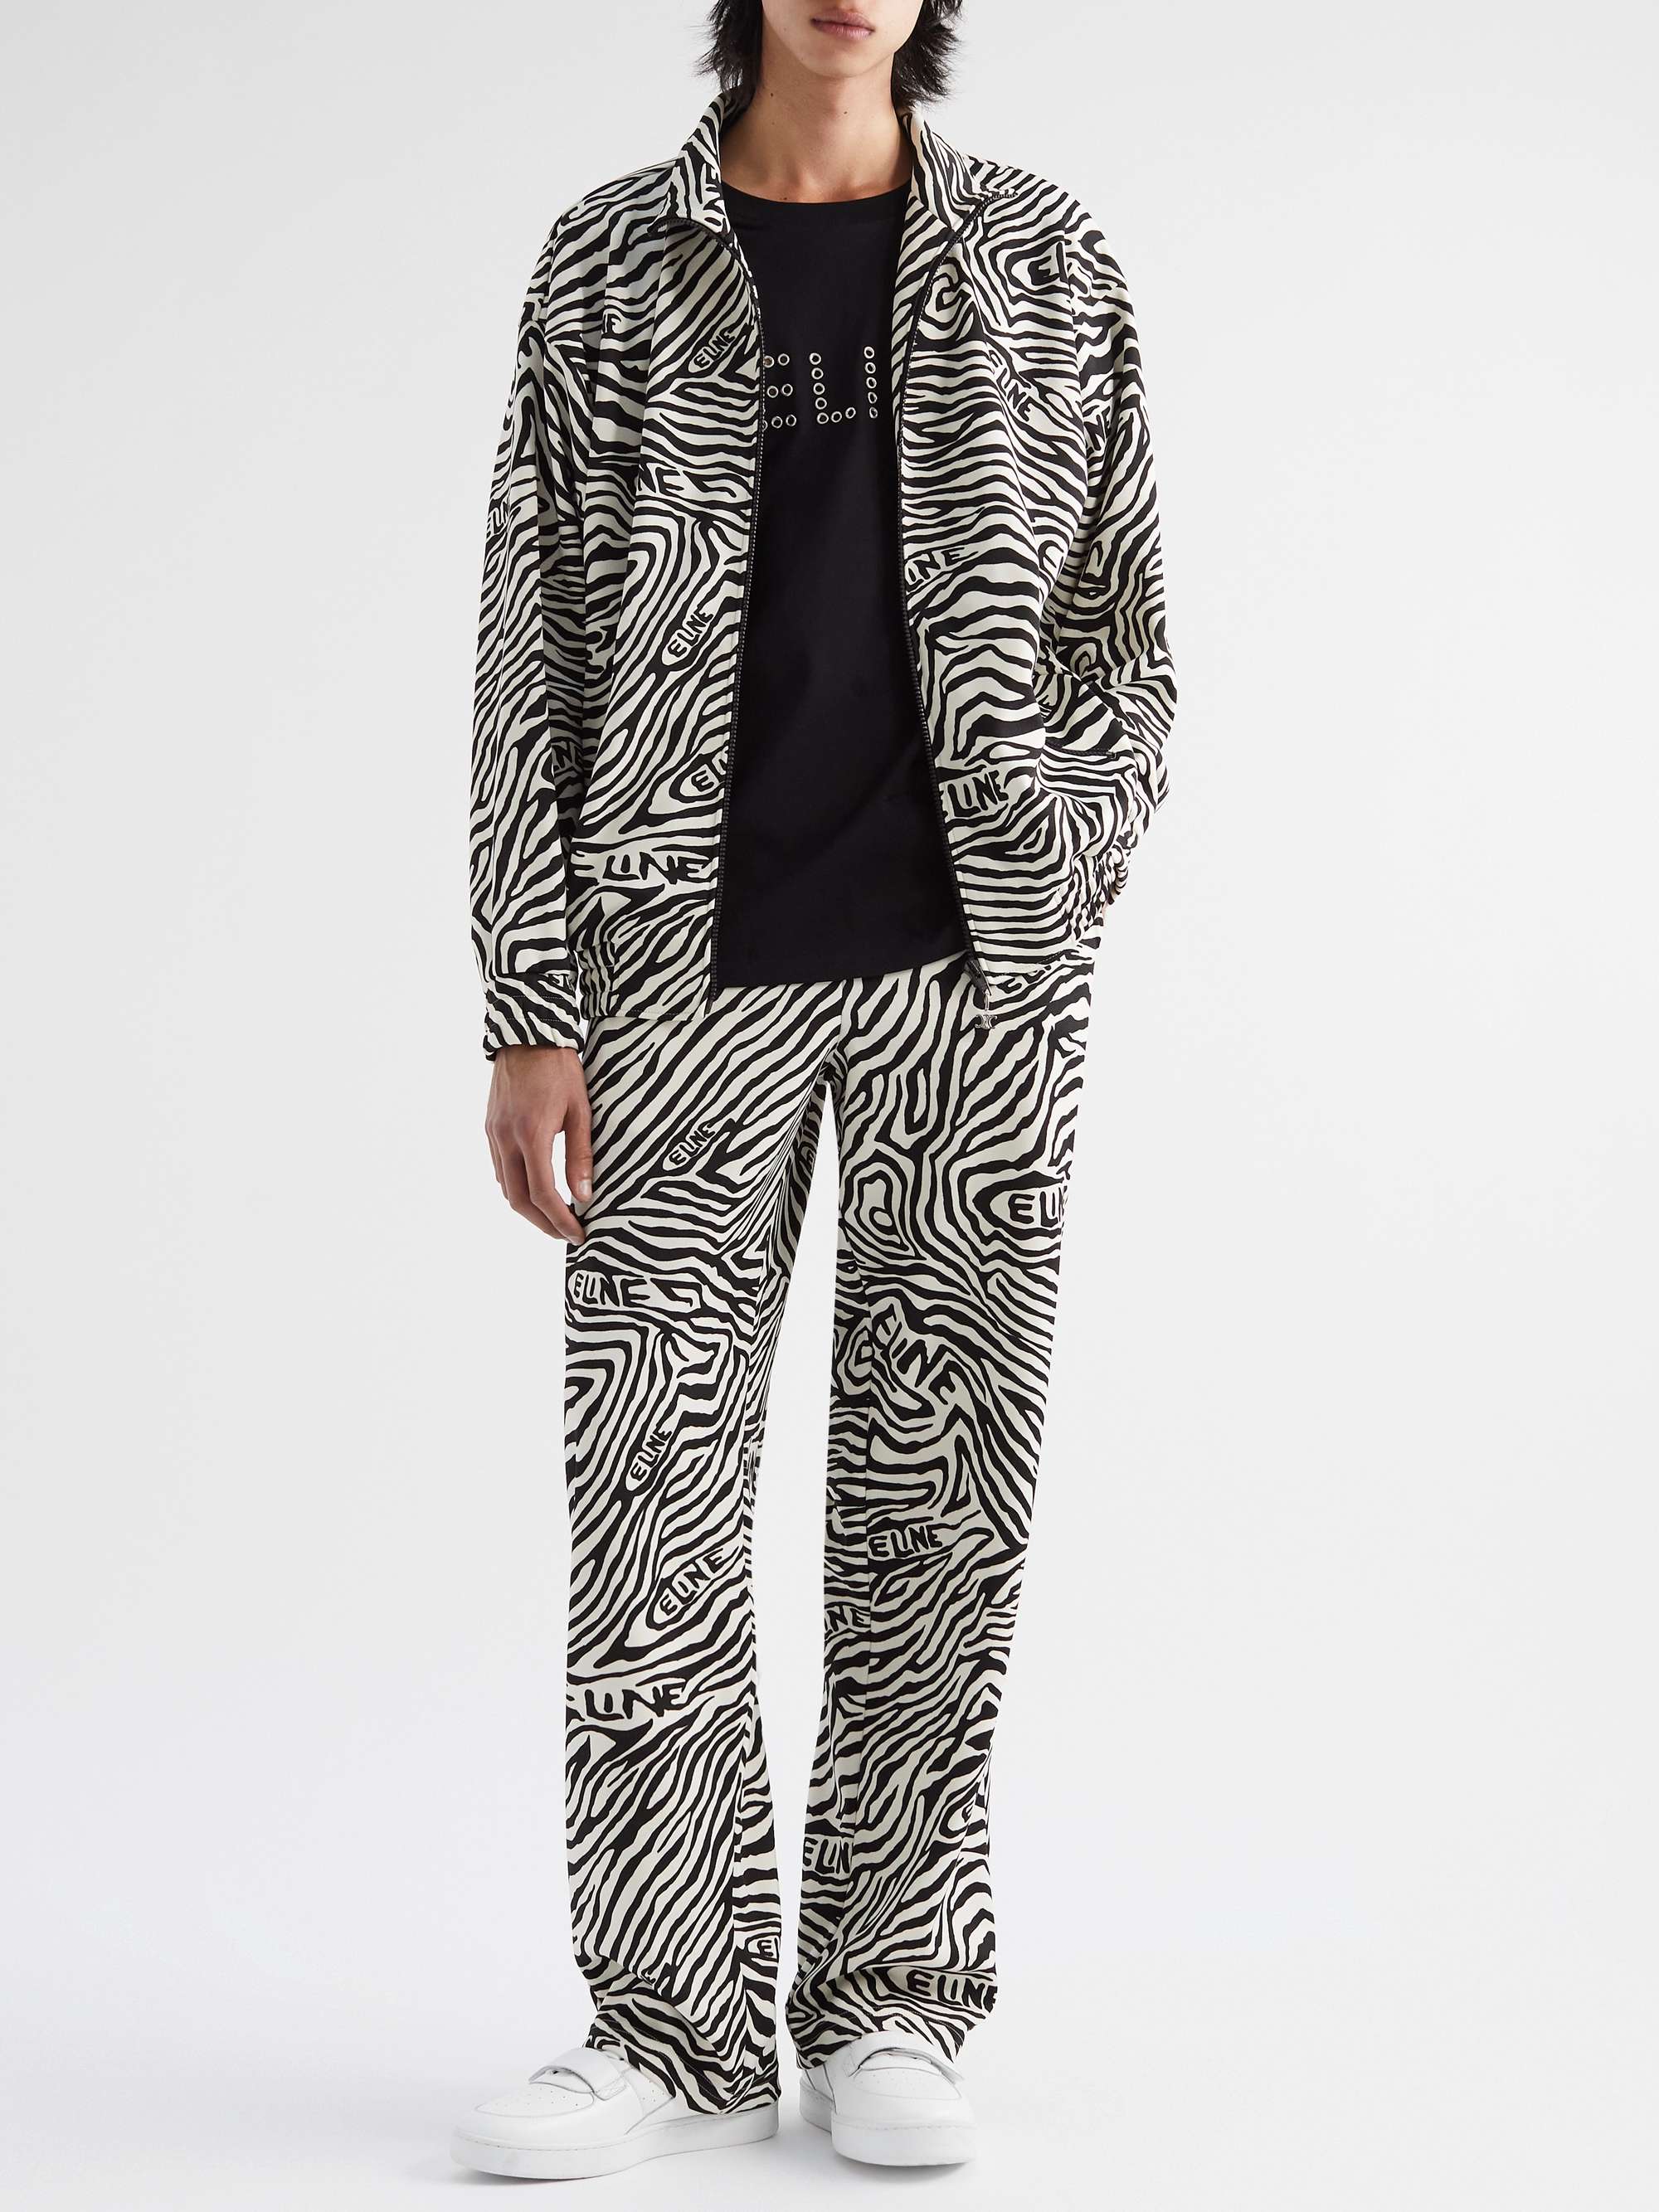 CELINE Zebra-Print Jersey Zip-Up Sweatshirt